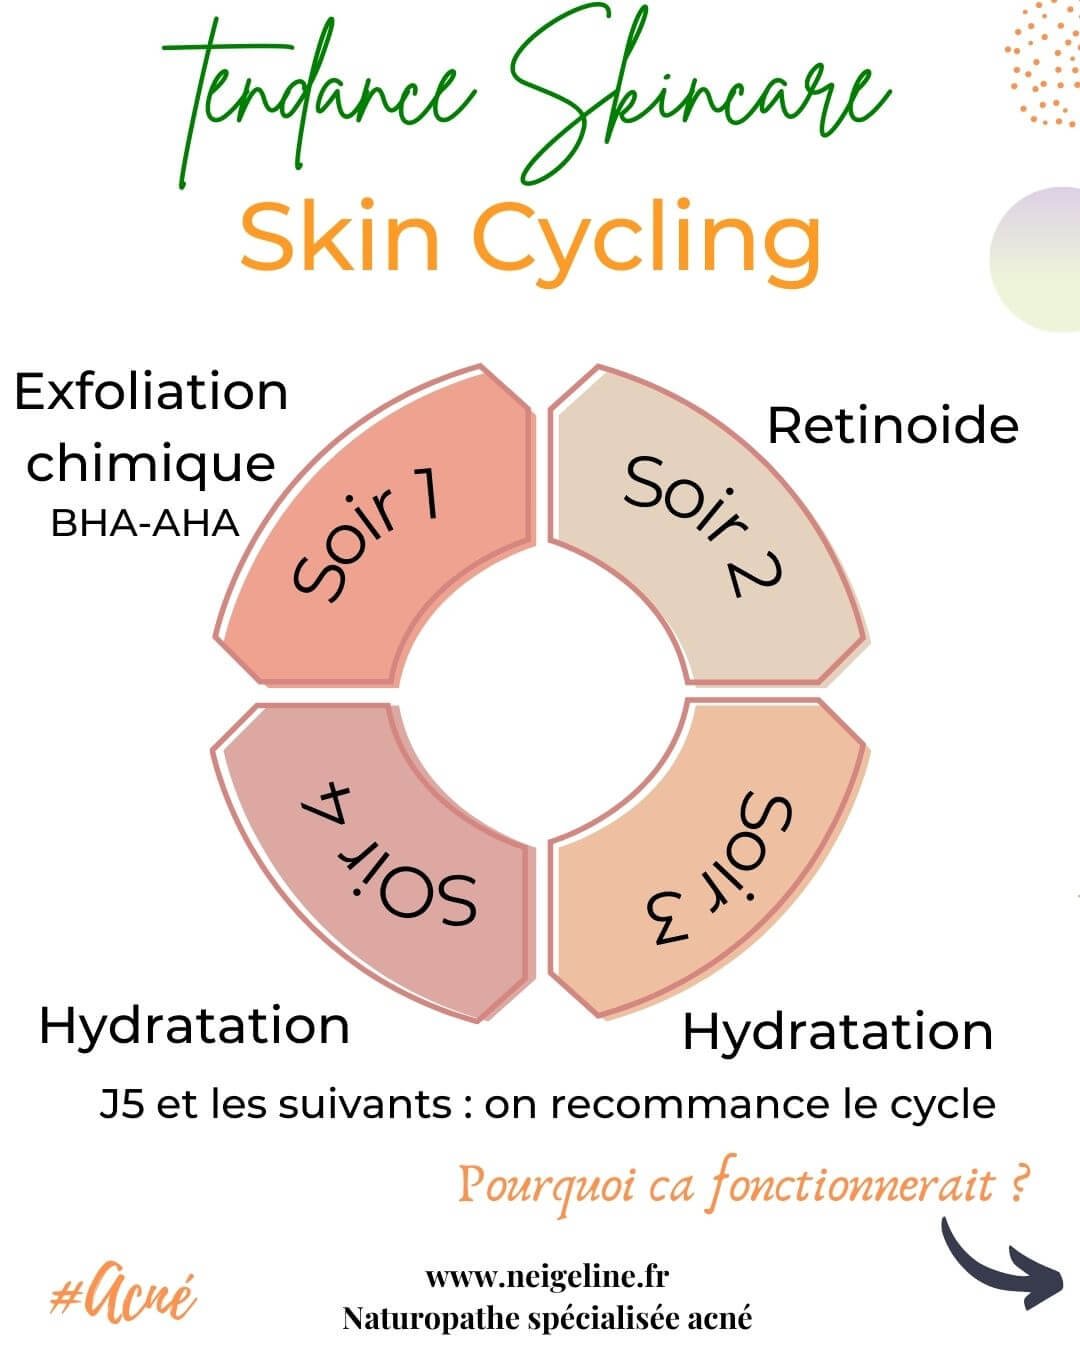 Skin cycling, plopping Quelles sont les nouvelles tendances